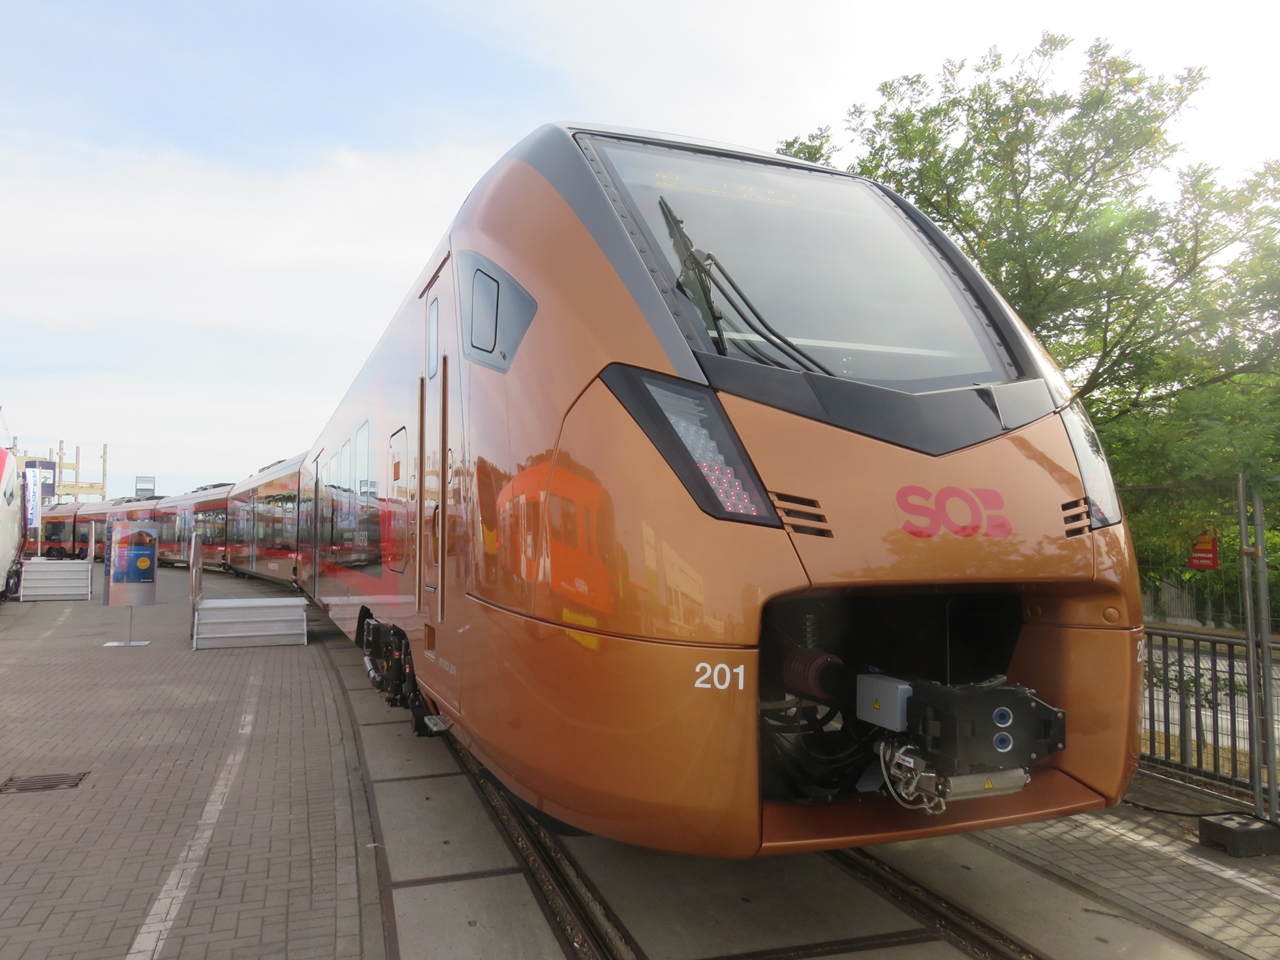 Újabb tizenkét Traversót szerez be a svájci SOB (forrás: Railway Gazette)